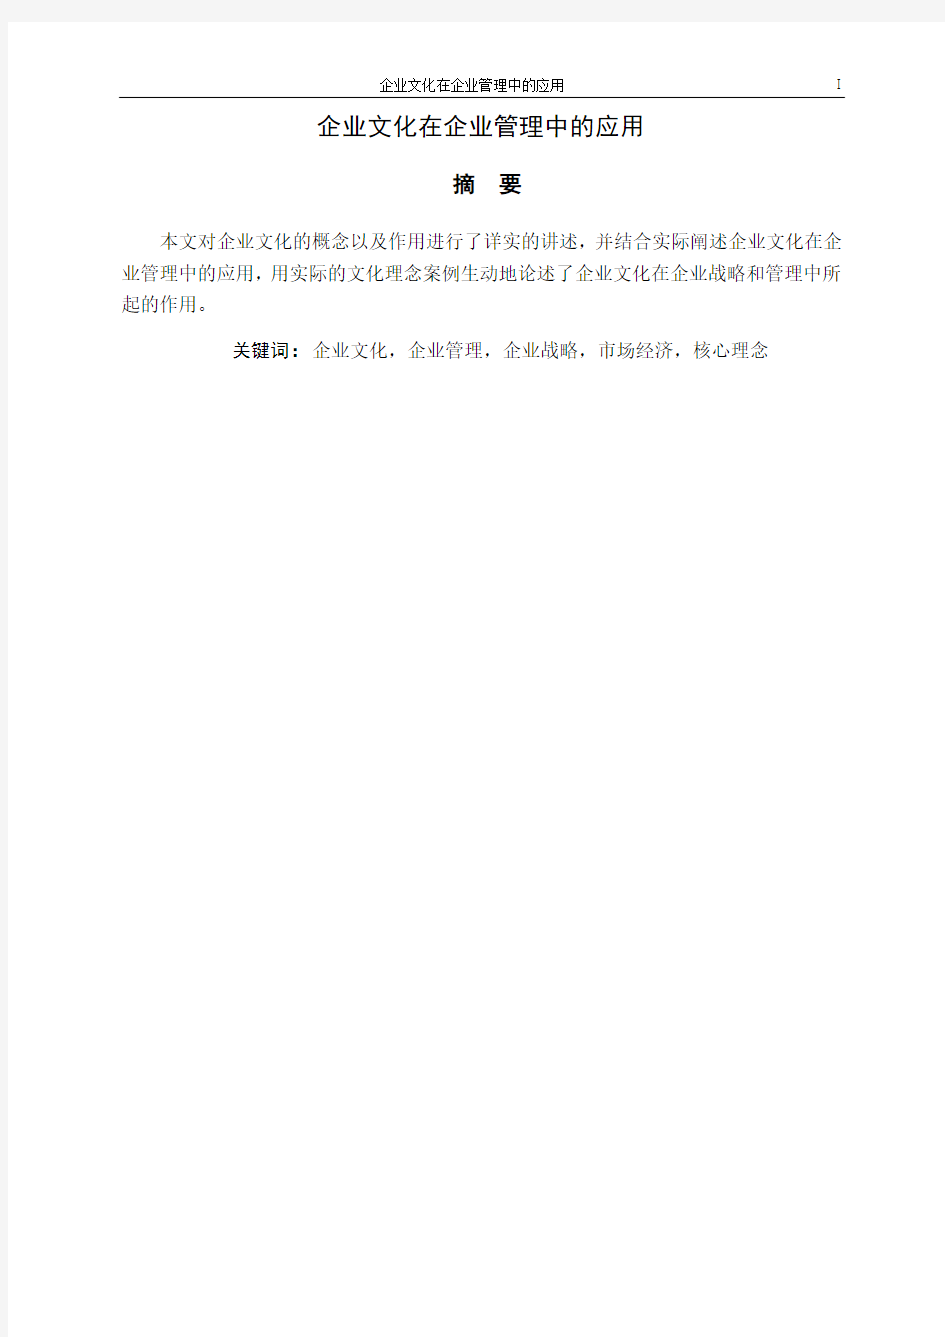 李俊华毕业论文A4纸单面打印,与封面在左侧装订成册